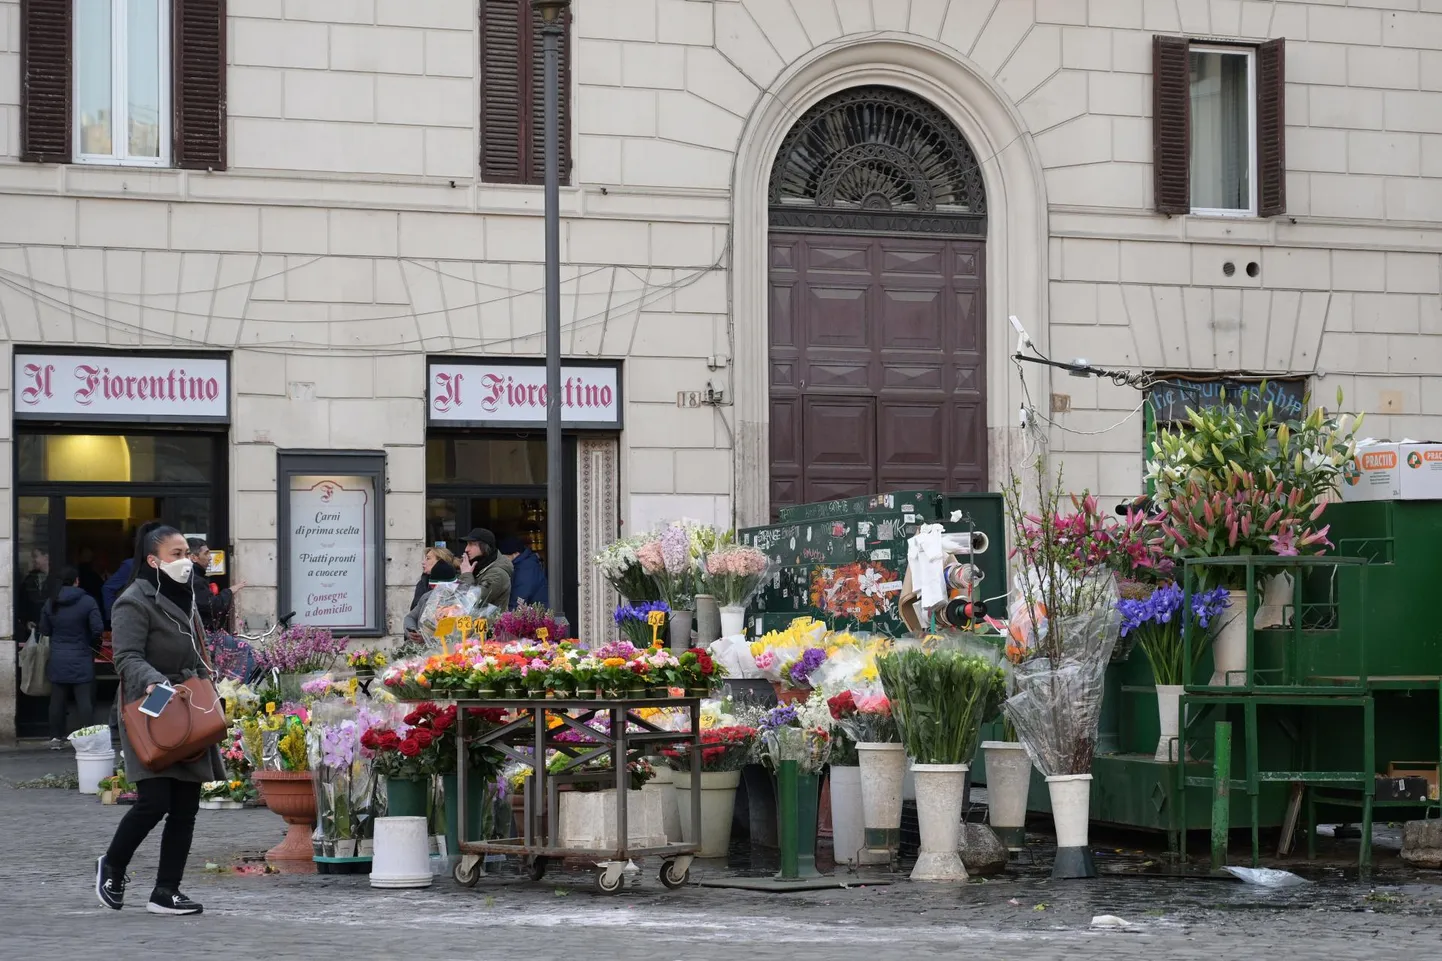 Liikumispiirangute küüsis Rooma tänavail süüa, ajalehti ja lilli müüvad kaupmehed on hädas, sest kliendid on kadunud ja äri kokkukuivanud. 